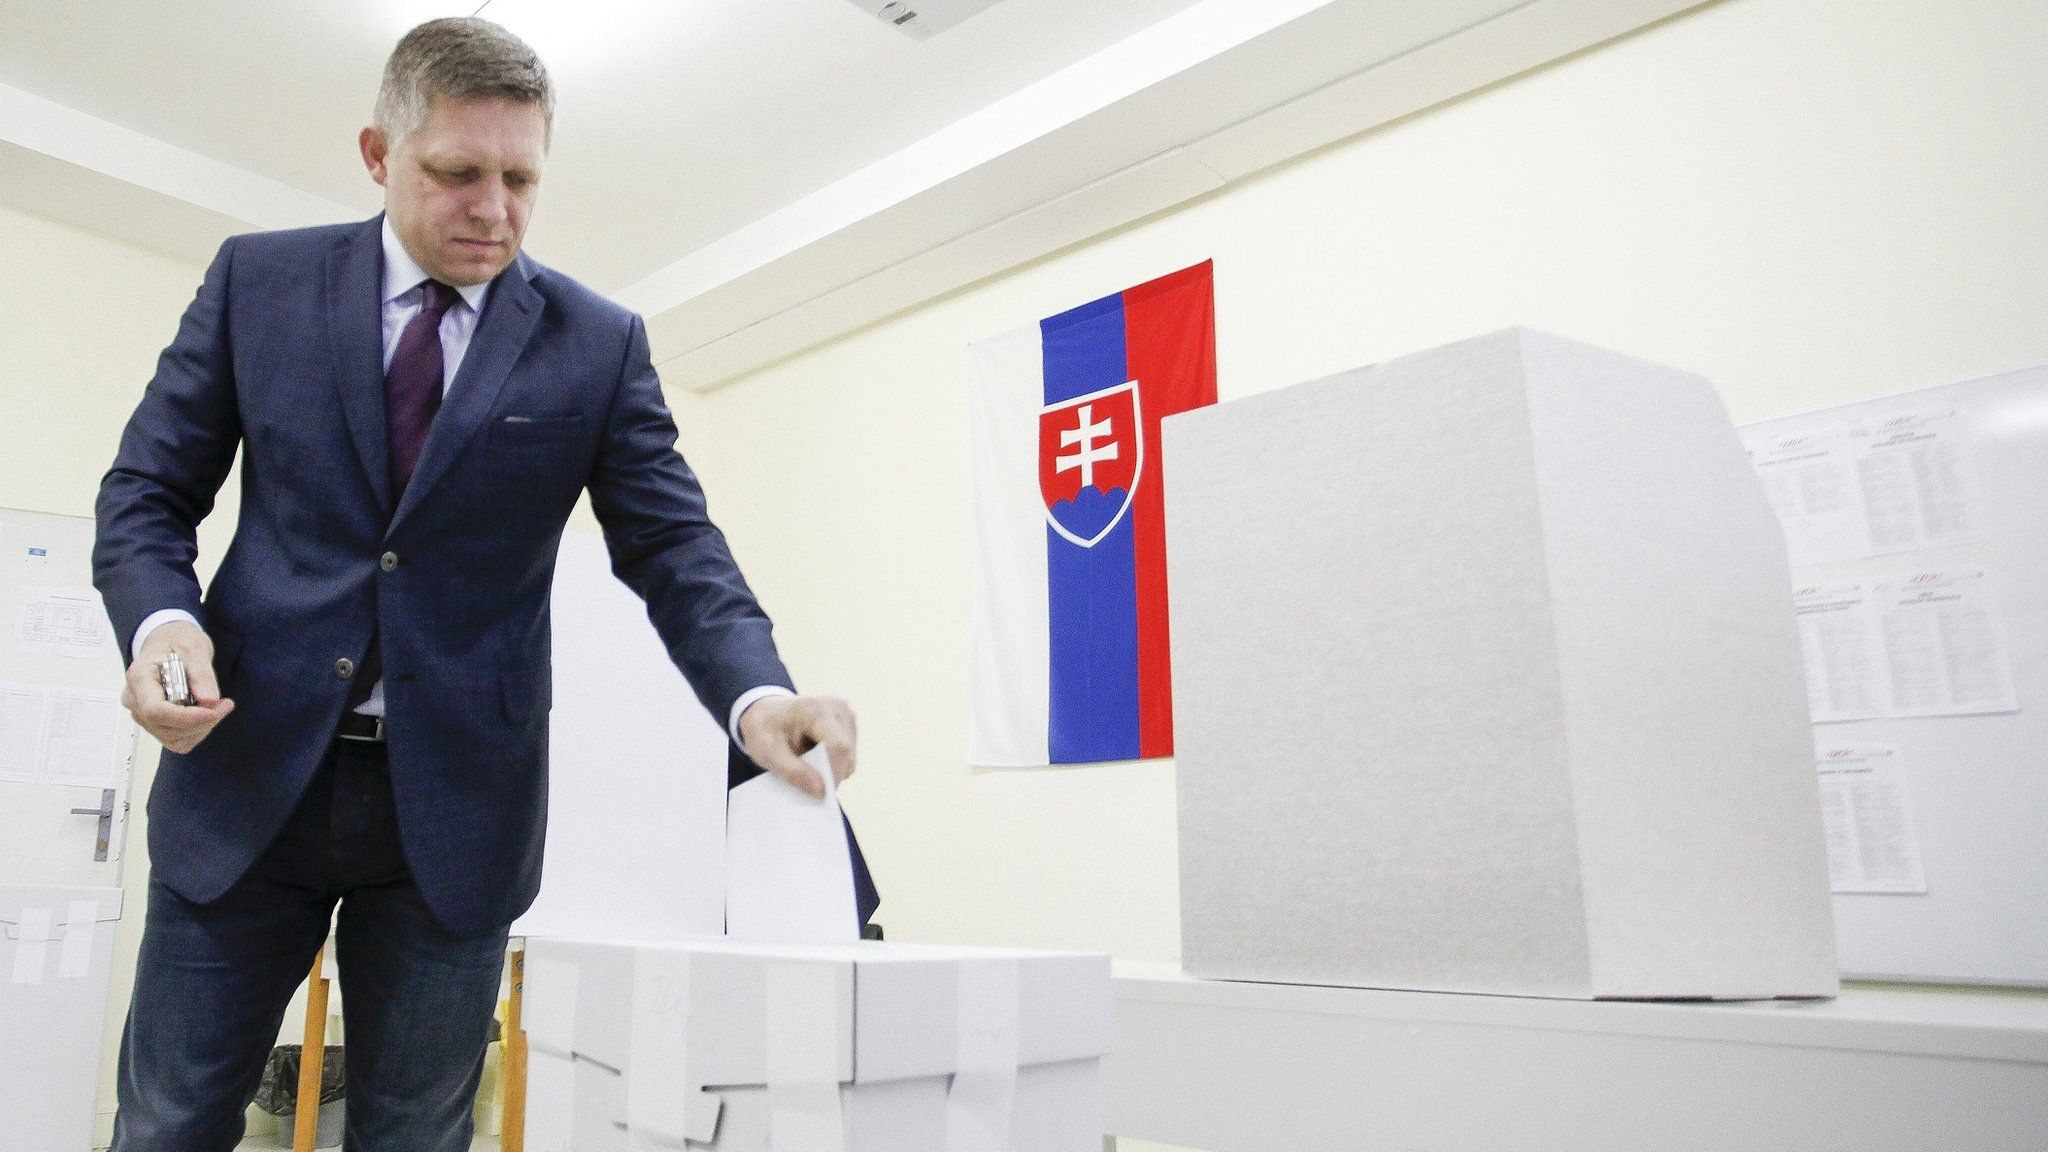 Slovak Prime Minister Robert Fico votes in Bratislava, 5 March